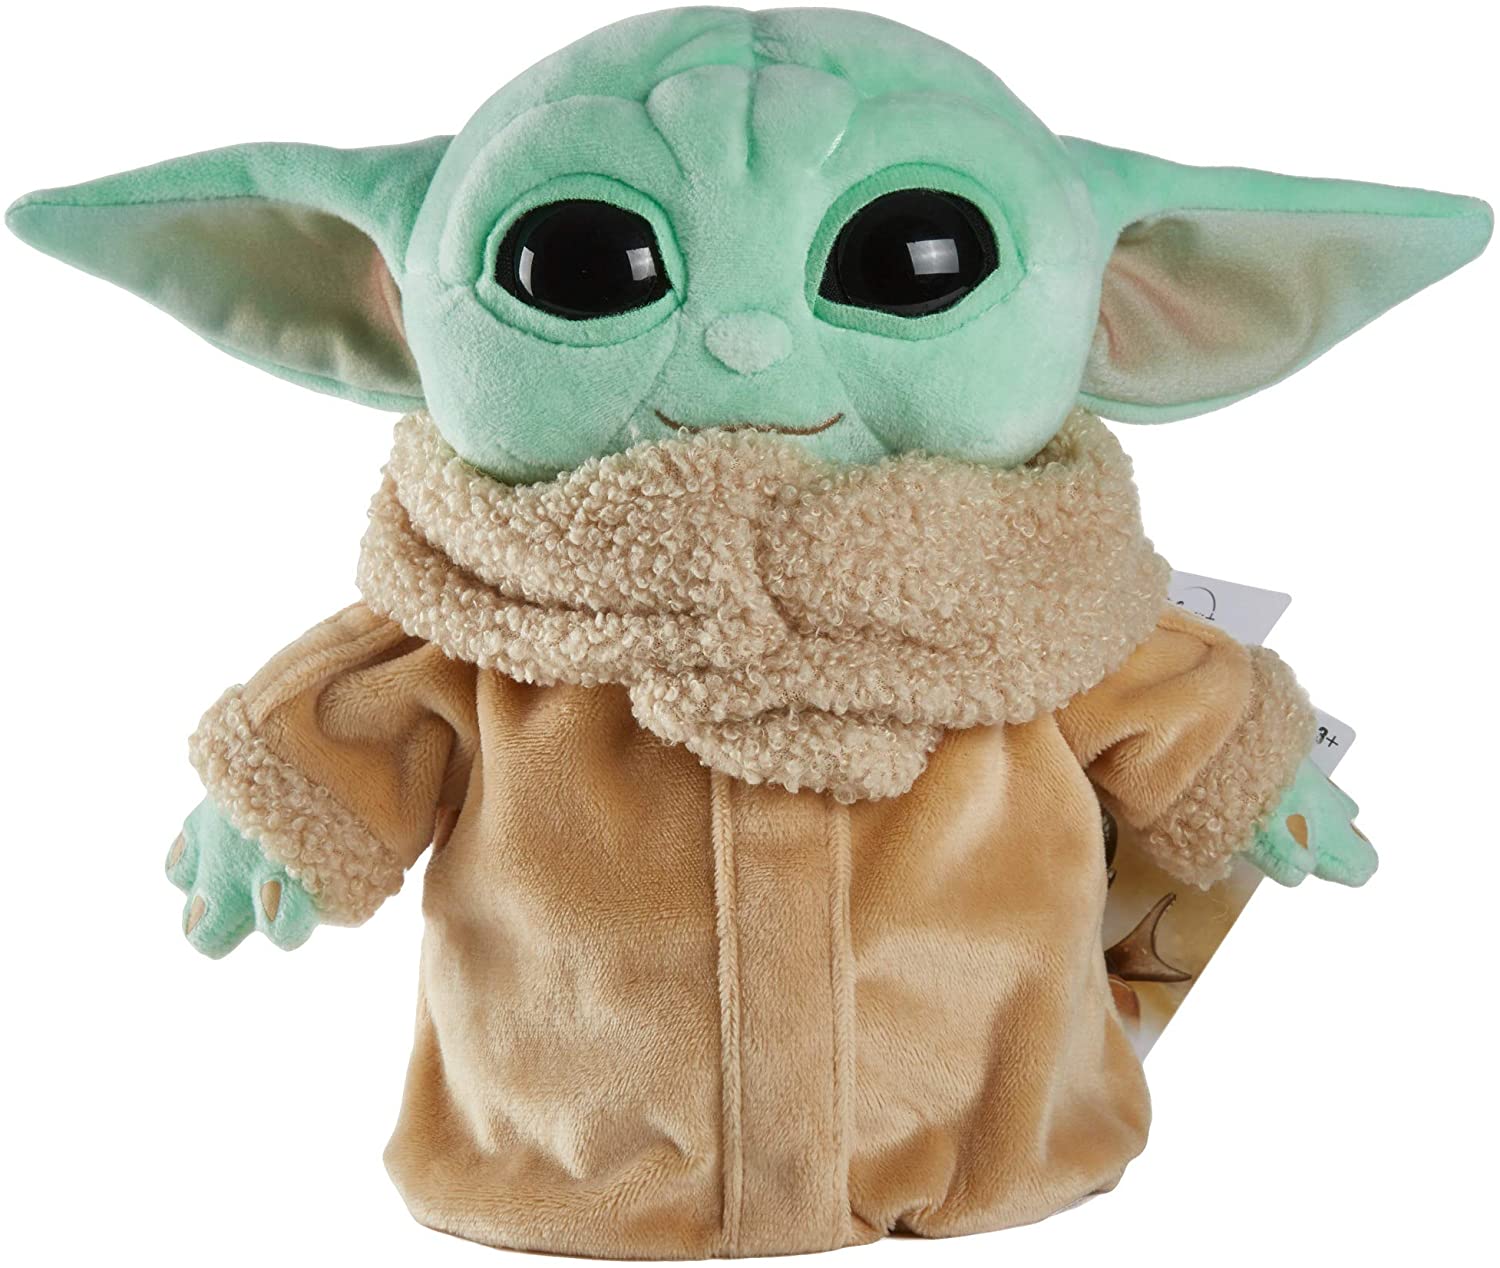 Baby Yoda from Amazon.